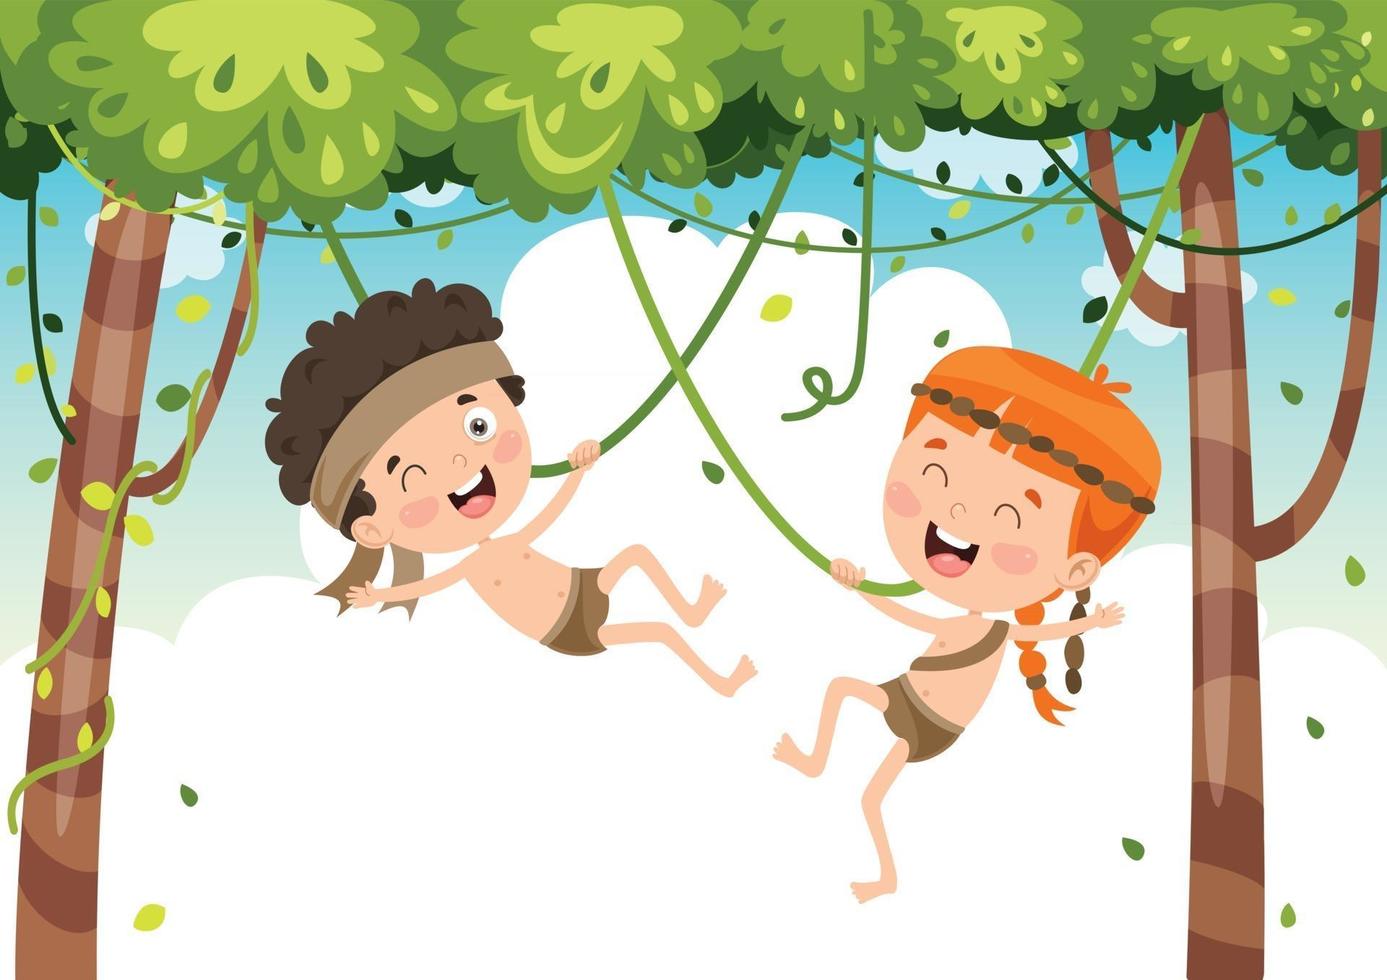 crianças felizes balançando com corda de raiz na selva vetor